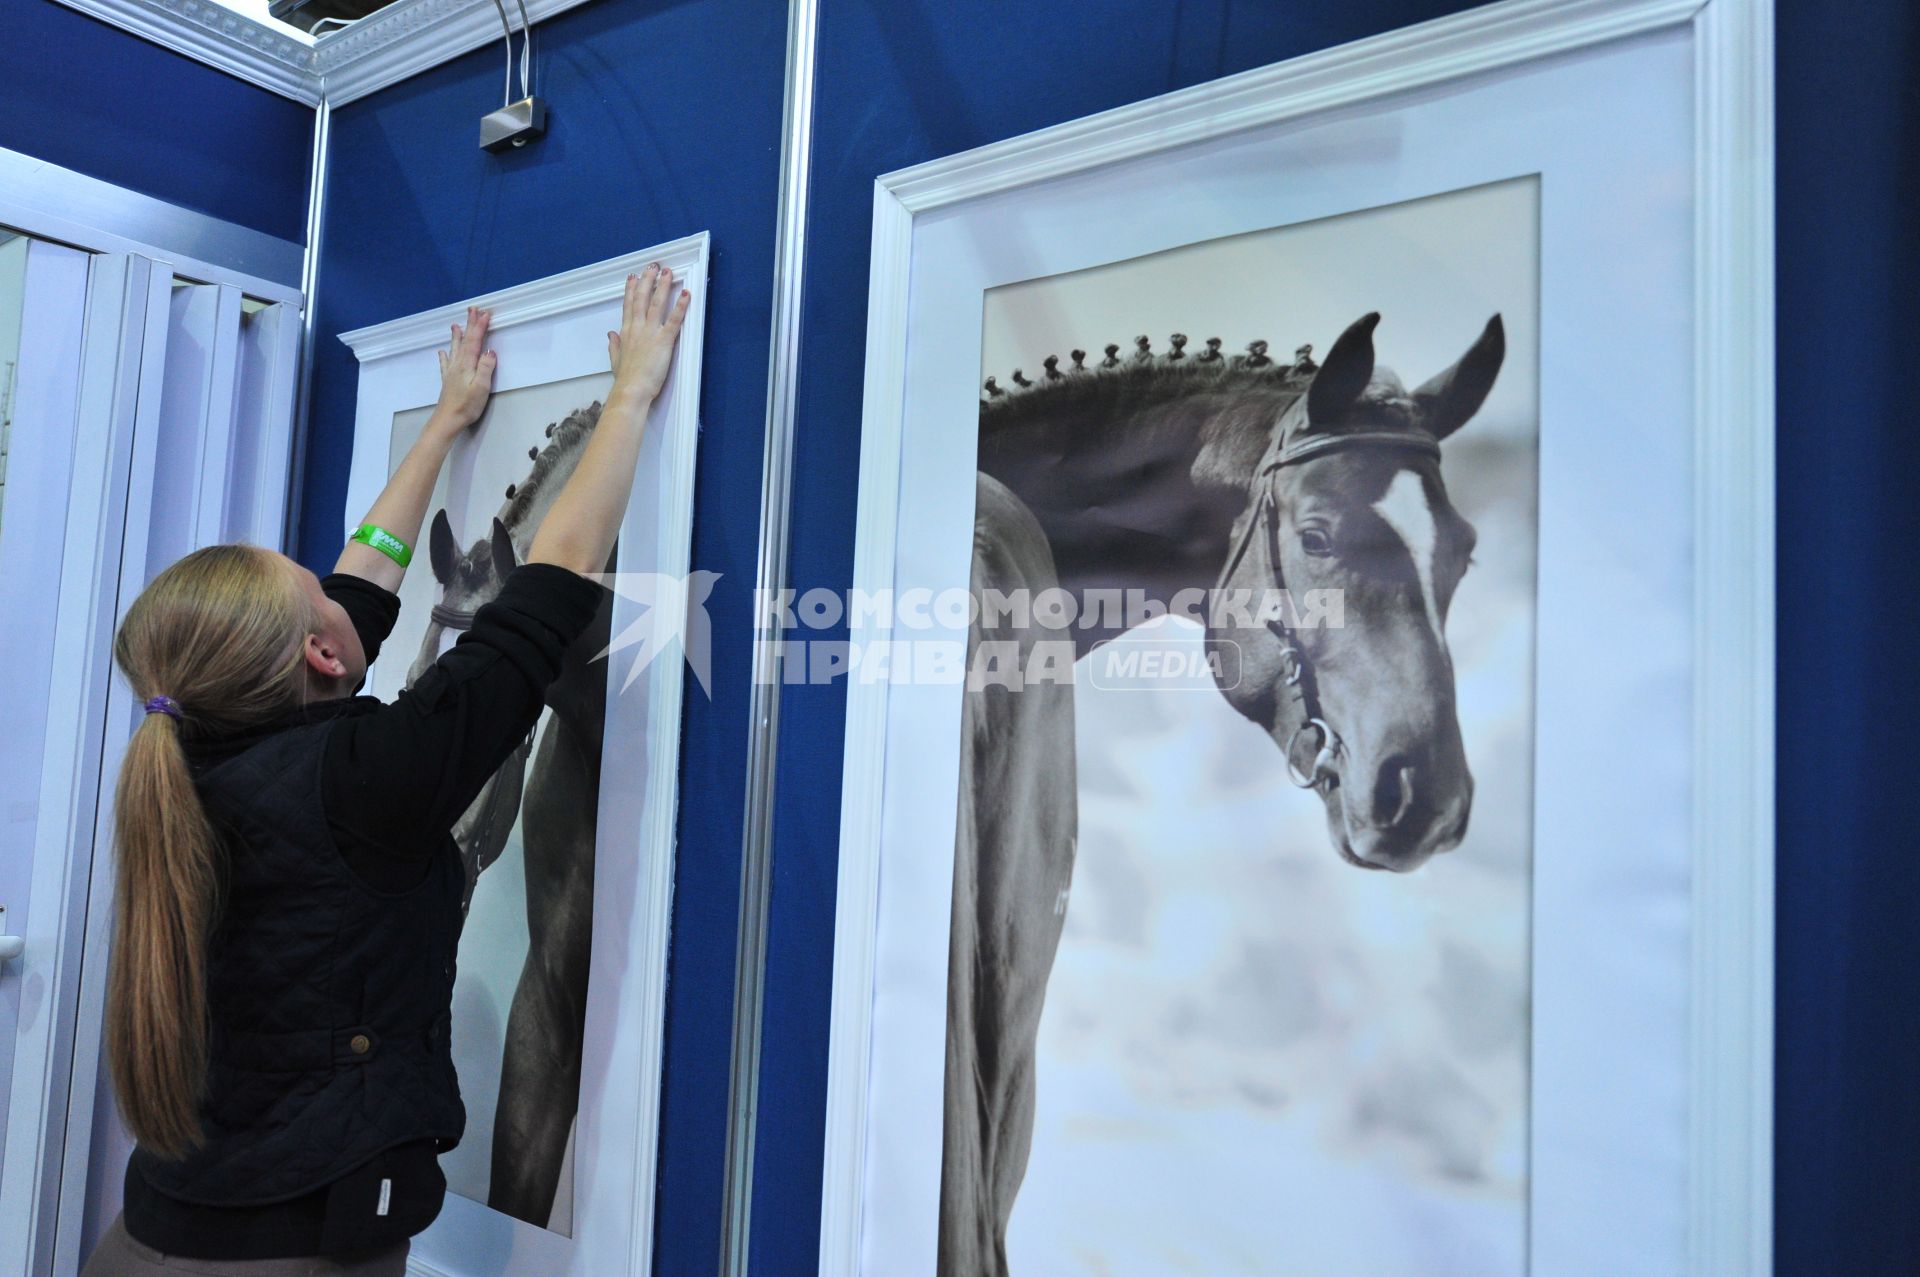 Международная конная выставка ЭКВИРОС. На снимке: девушка размещает фотографии лошадей. 5 октября 2011 года.